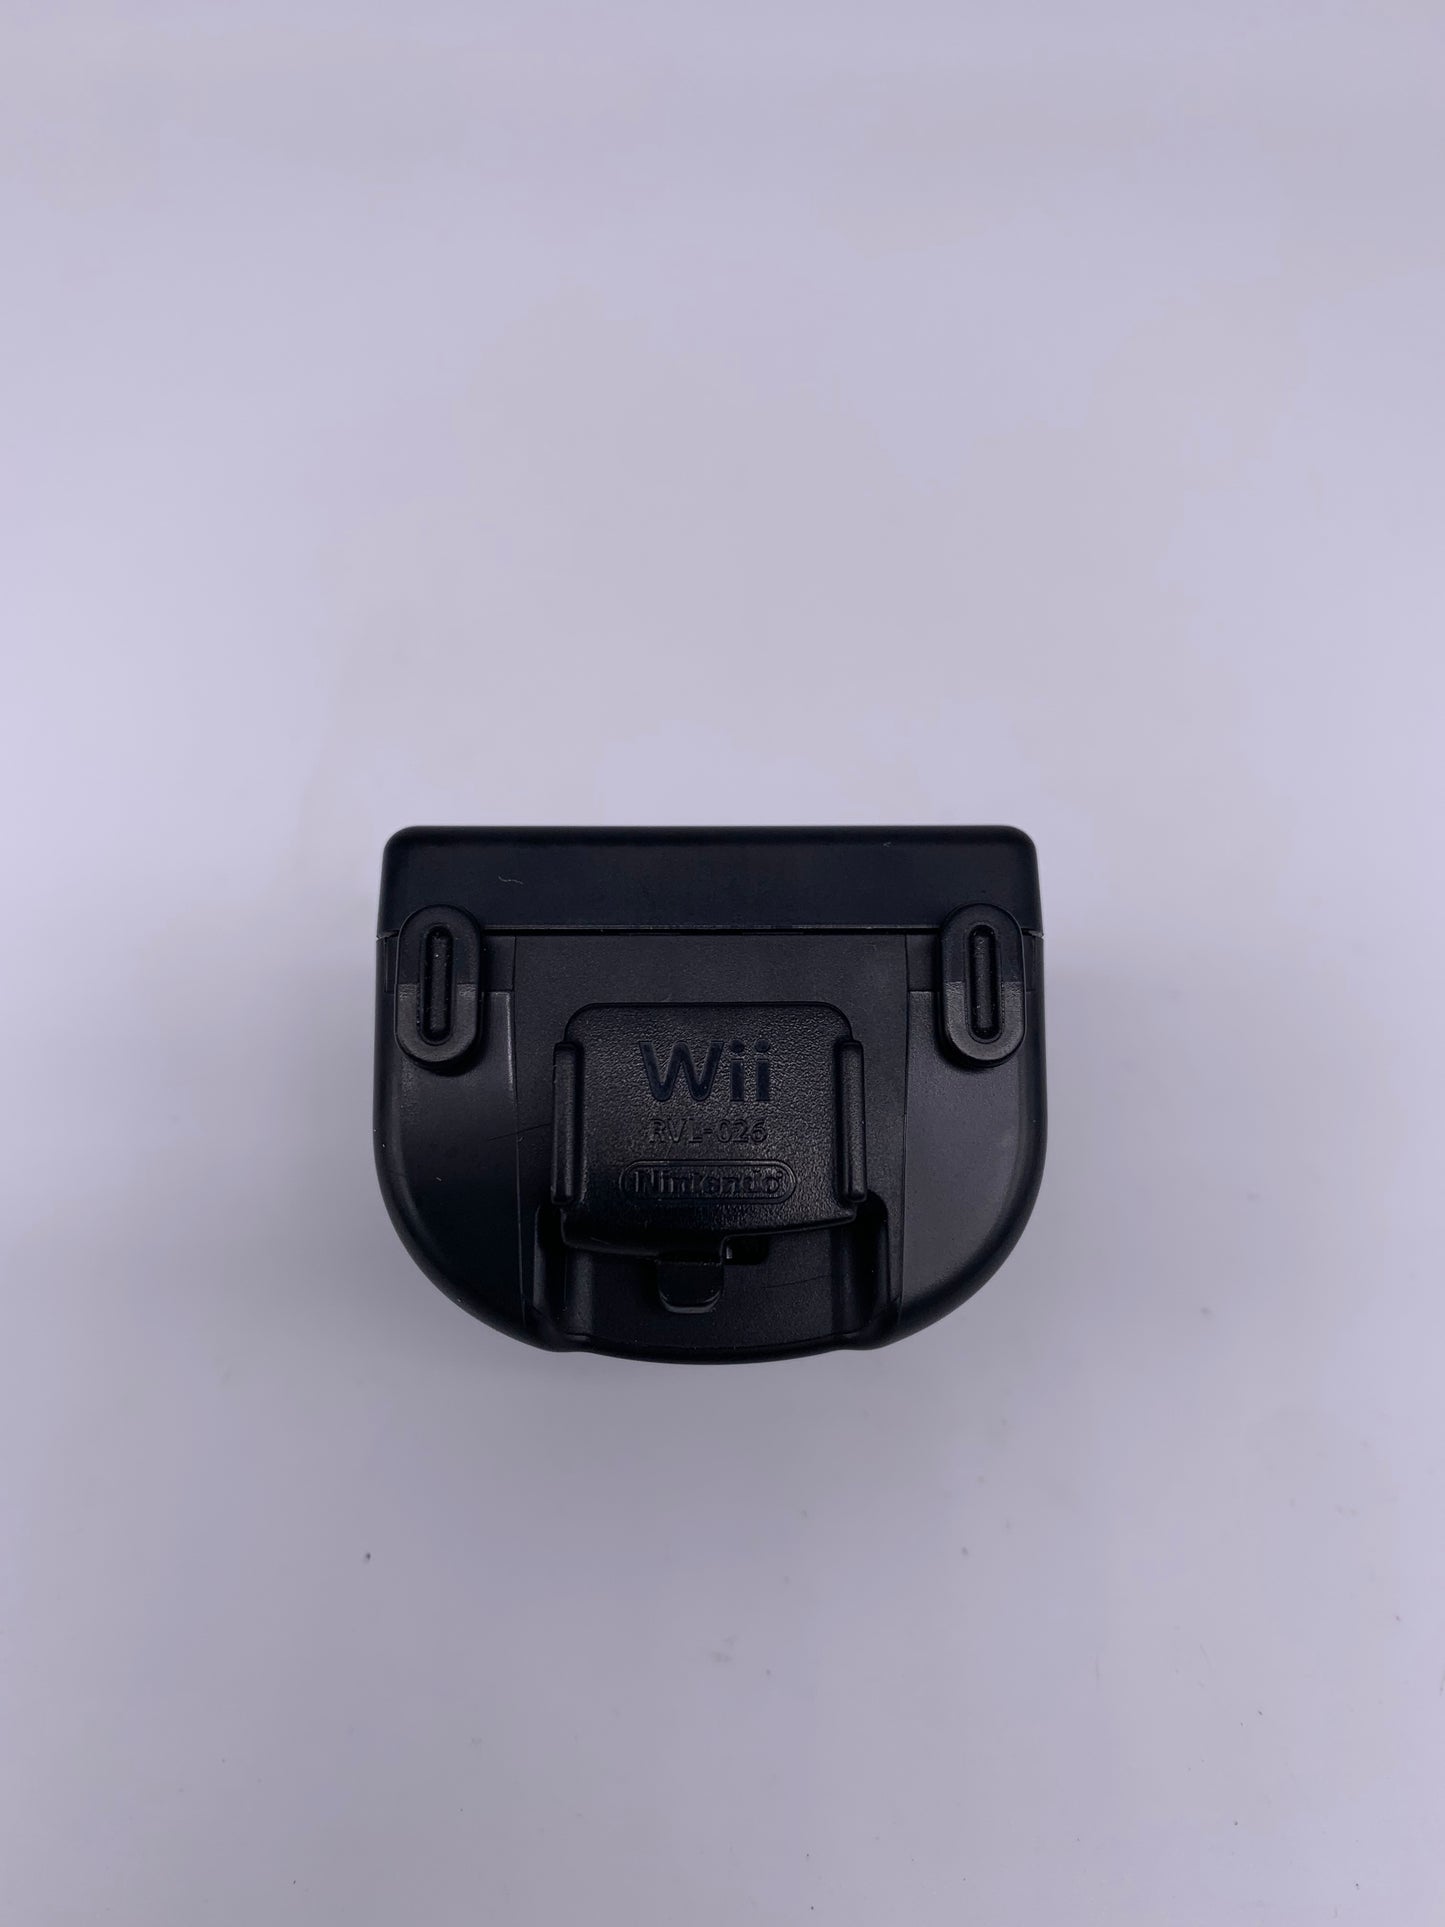 NiNTENDO Wii | ADAPTEUR POUR MANETTE WiiMOTiON OFFiCiEL NOiR | RVL-026